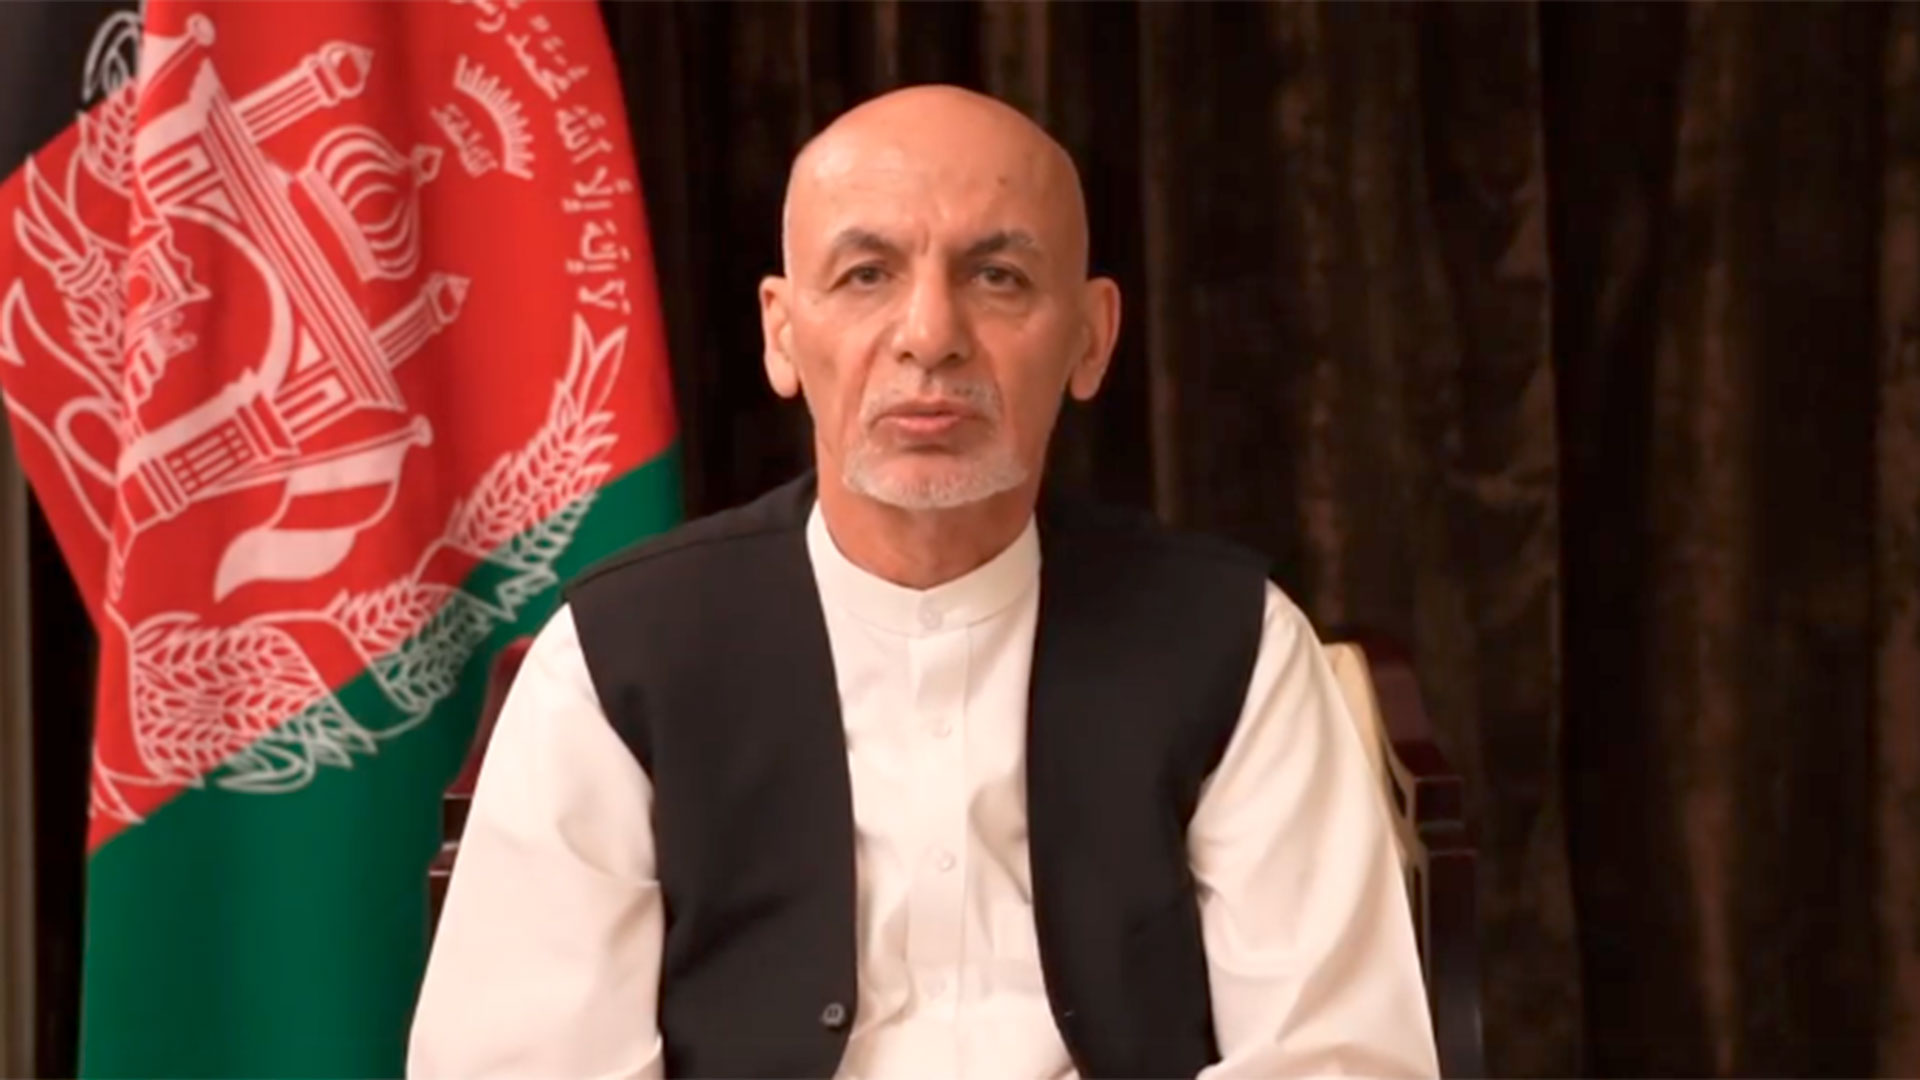 El ex presidente Ashraf Ghani en su primer mensaje luego de escapar de Afganistán tras la toma del poder por parte de los talibanes. 